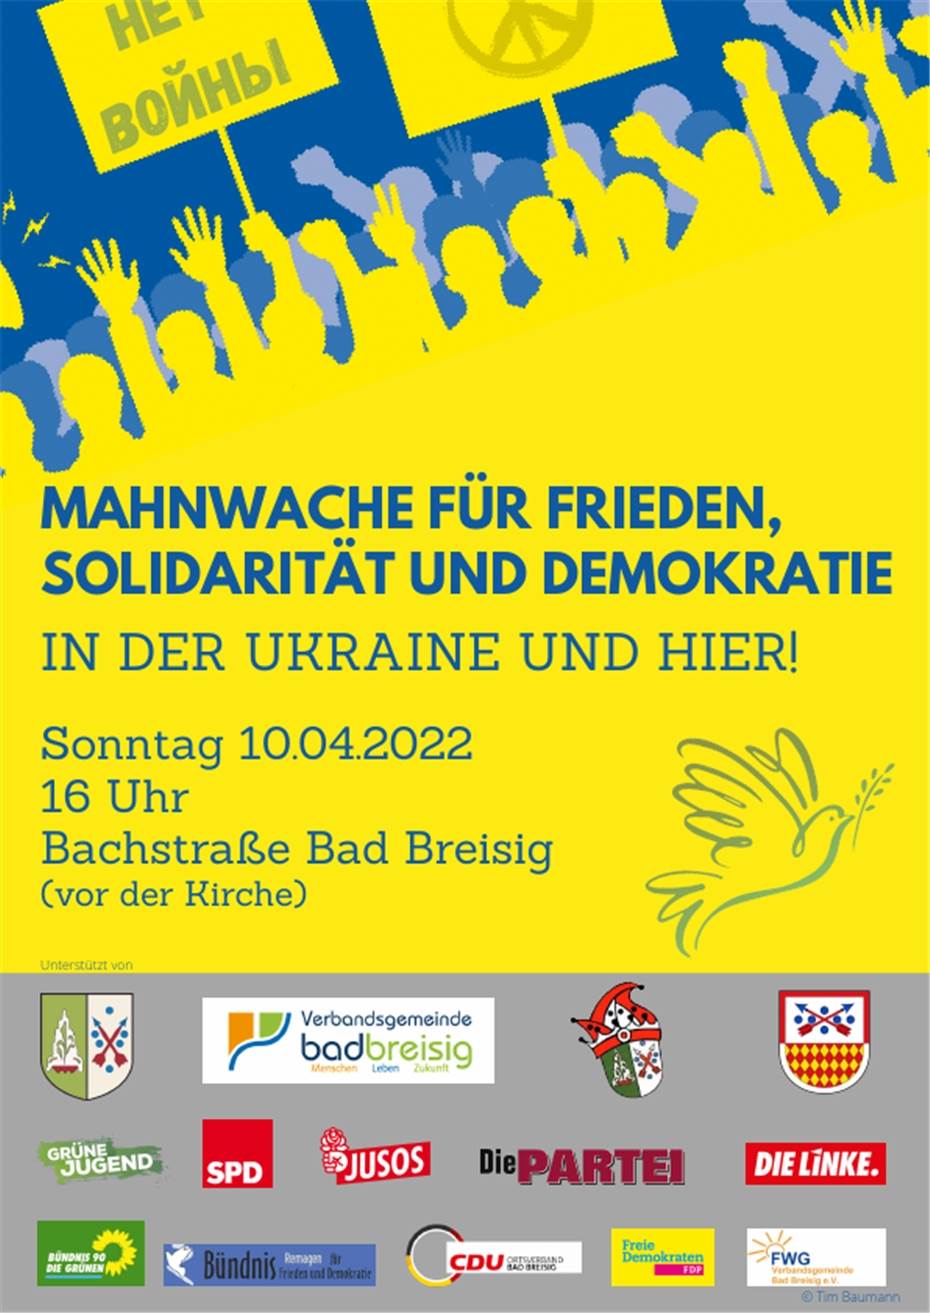 Mahnwache zum Krieg in der Ukraine
am 10.04.2022 in Bad Breisig